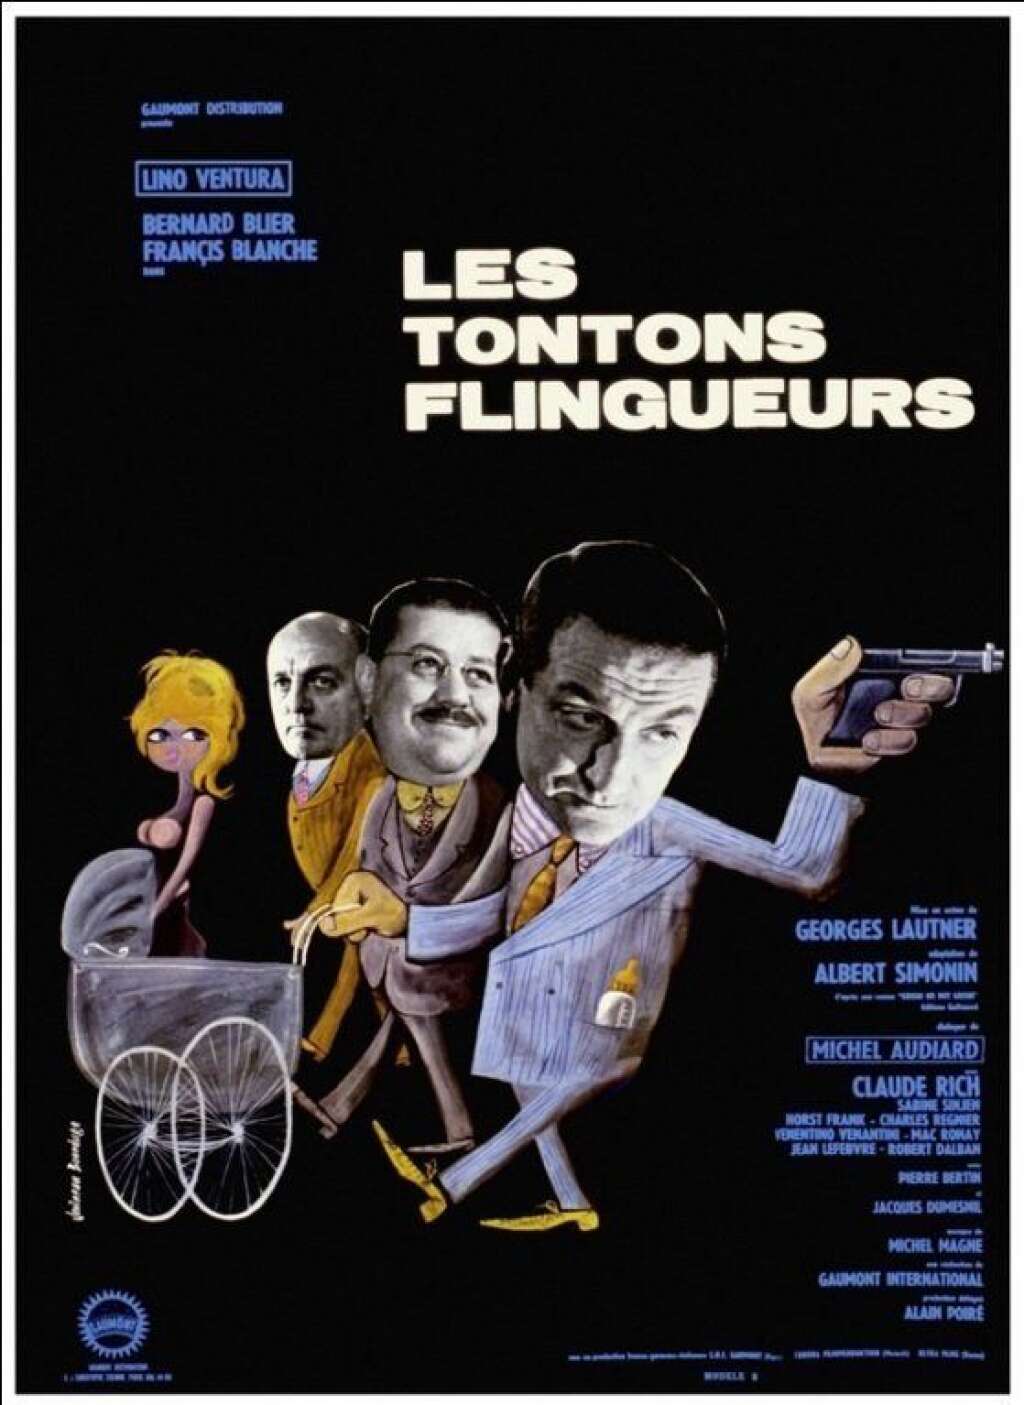 Le rôle principal était destiné à Jean Gabin - Finalement, Georges Lautner réussit à imposer Lino Ventura, peu assuré lui-même de son potentiel comique, dans le rôle de Fernand Naudin.